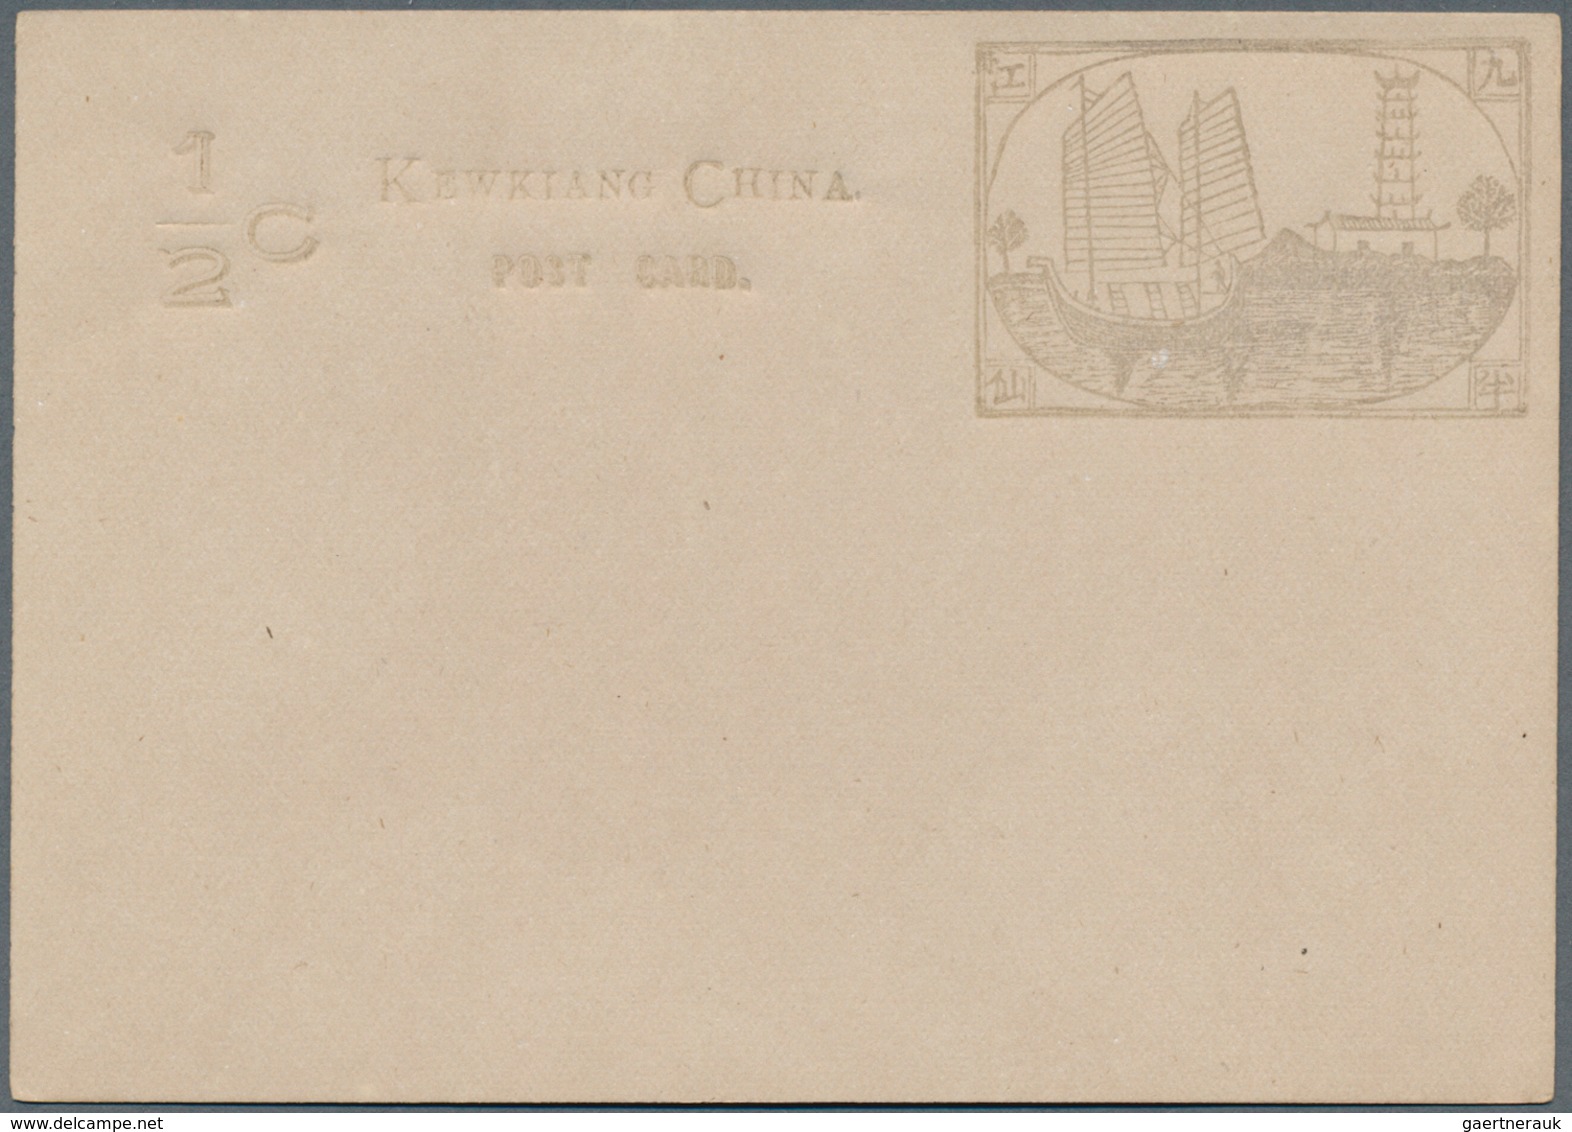 22410 China - Ganzsachen: Local Posts, Mint Stationery, Kewking Card 1/2 C. (7, Shades), Chinkiang Card 1 - Cartes Postales